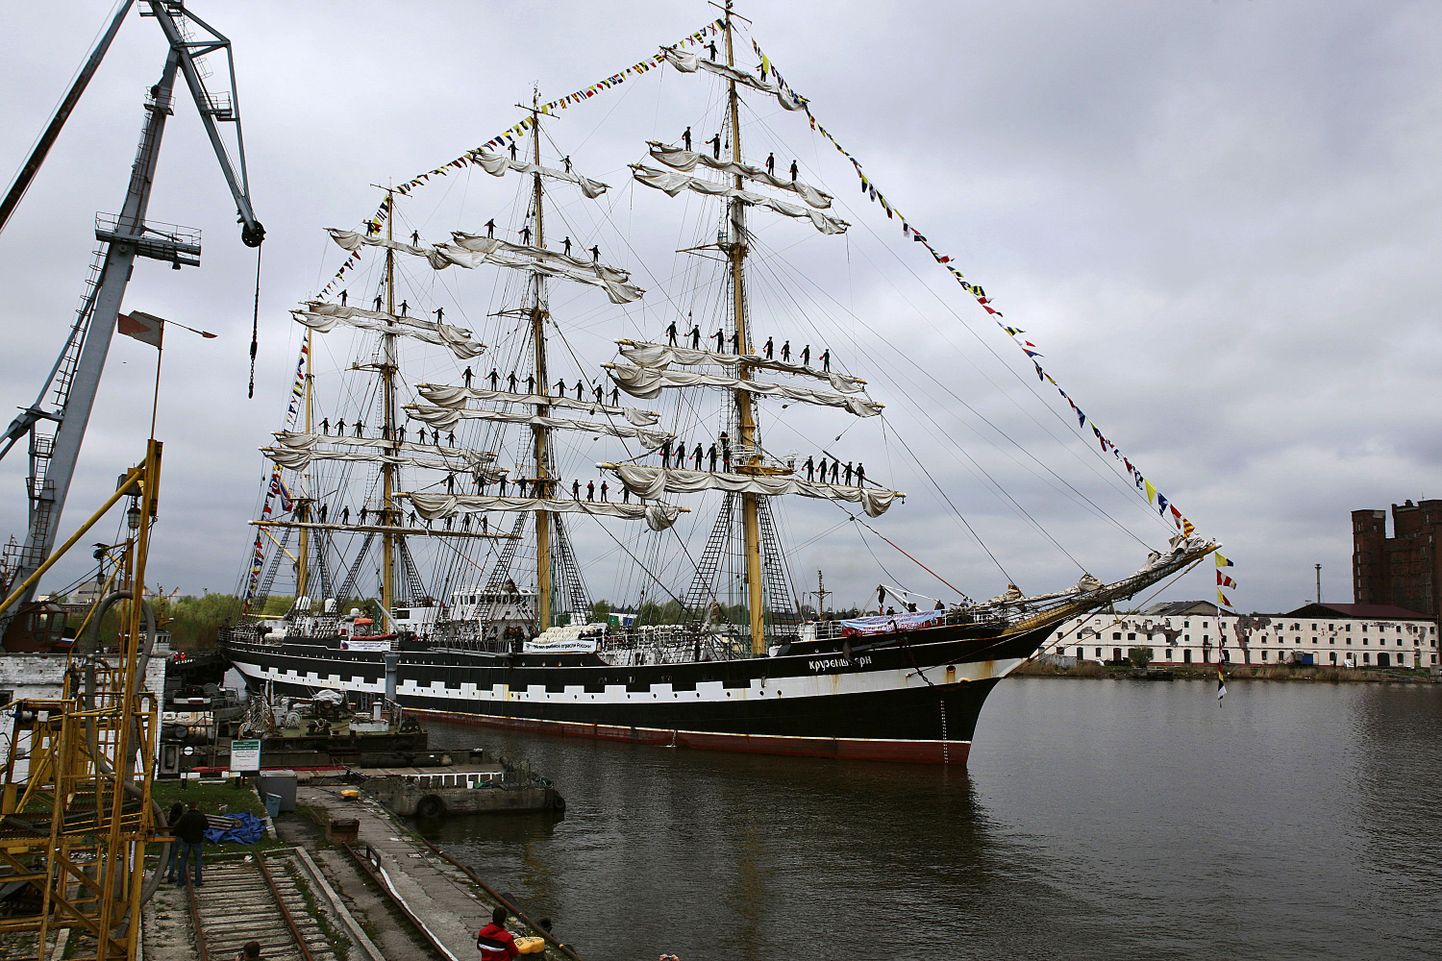 Parklaev Krusenstern Kaliningradi sadamas.